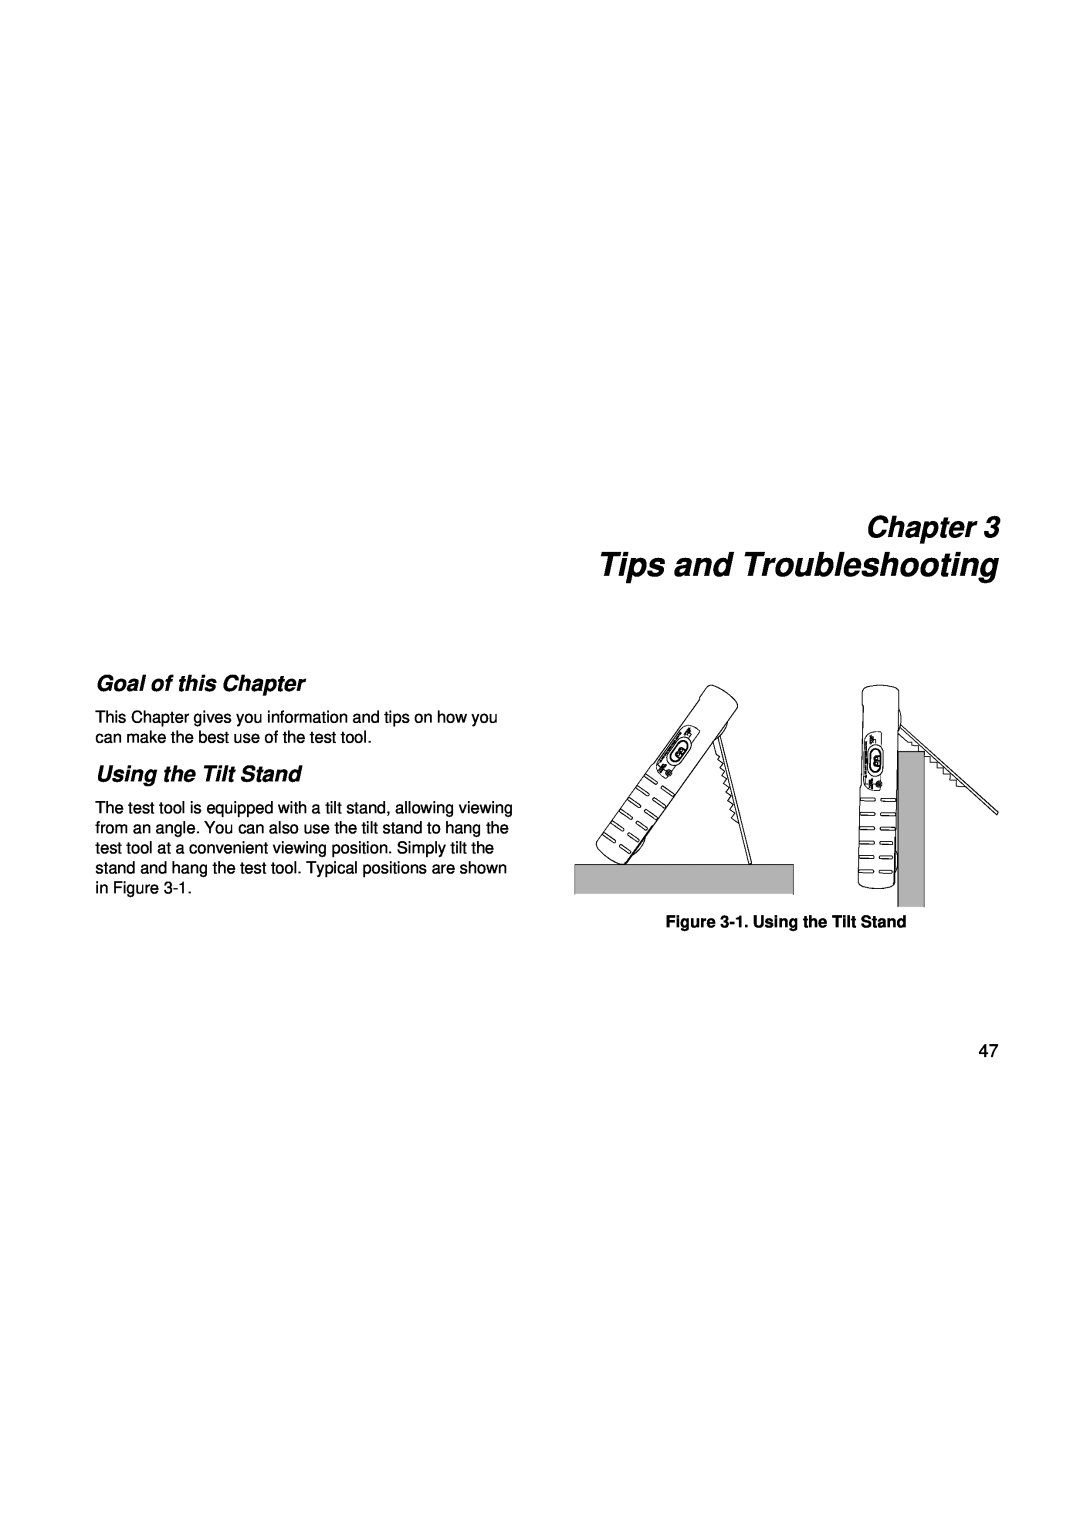 Fluke fluke123 user manual Tips and Troubleshooting, 1. Using the Tilt Stand, Goal of this Chapter 